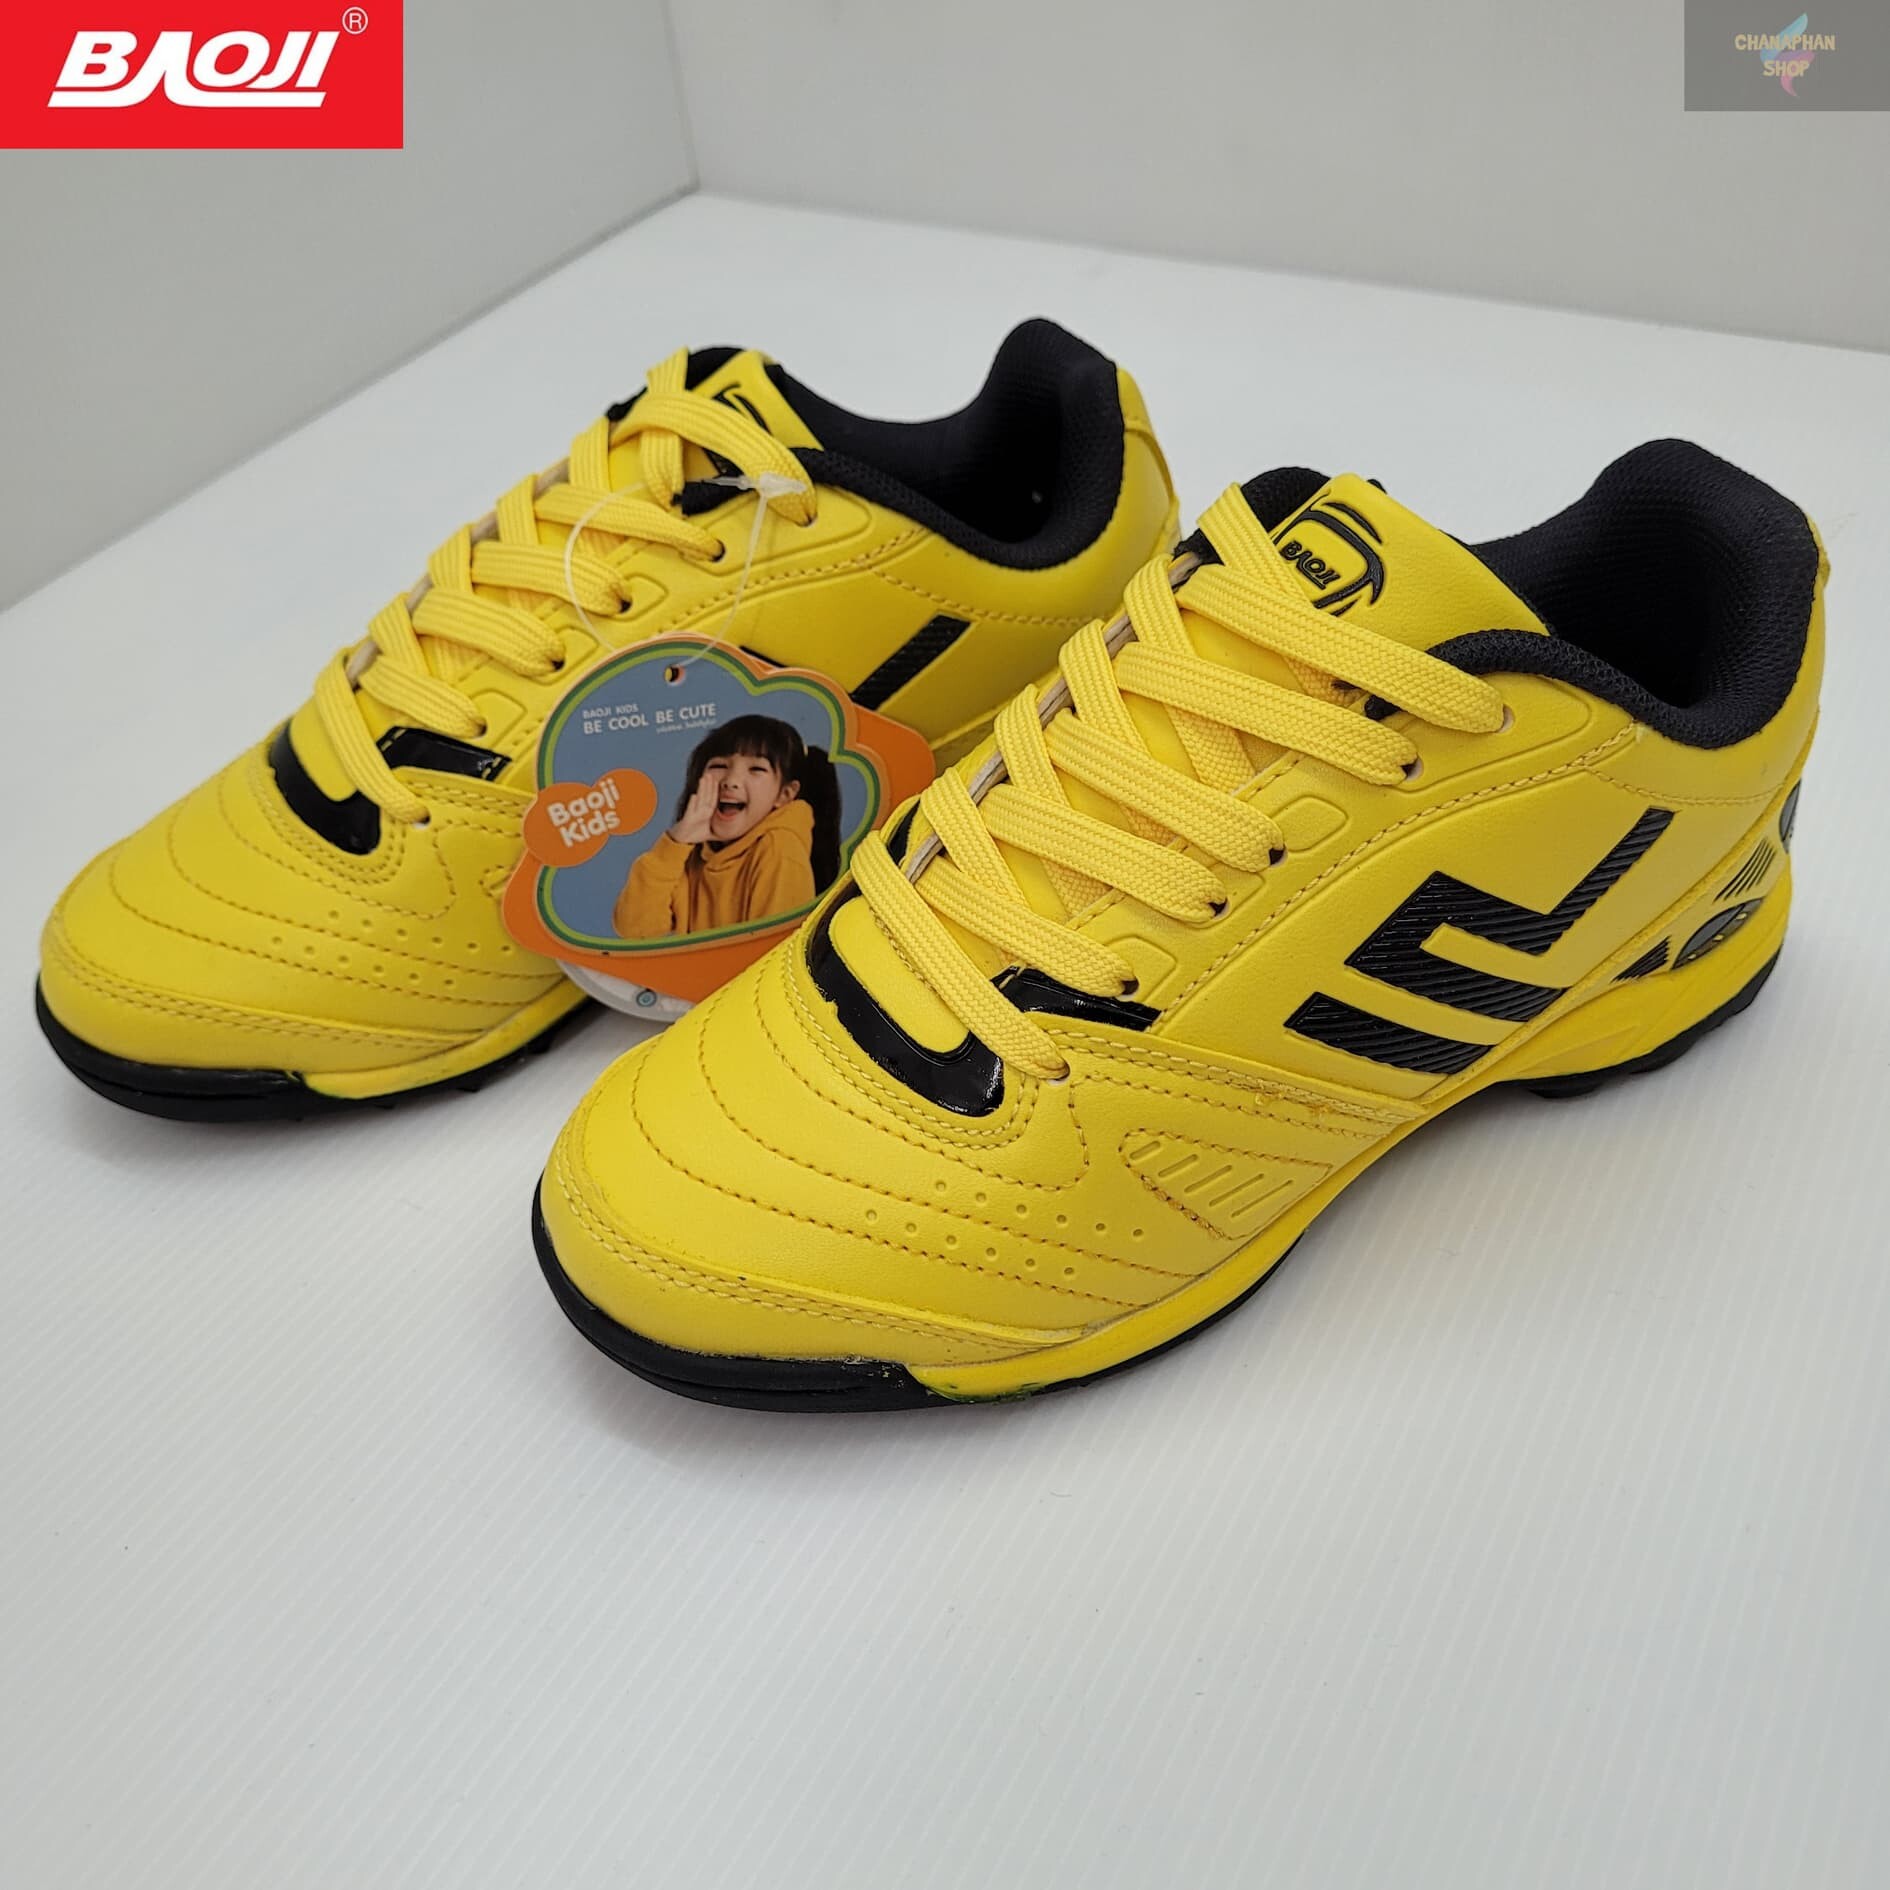 Baoji ของแท้ 100% รองเท้าฟุตซอลเด็ก รุ่น GH866 สีเหลือง SIZE 31-36